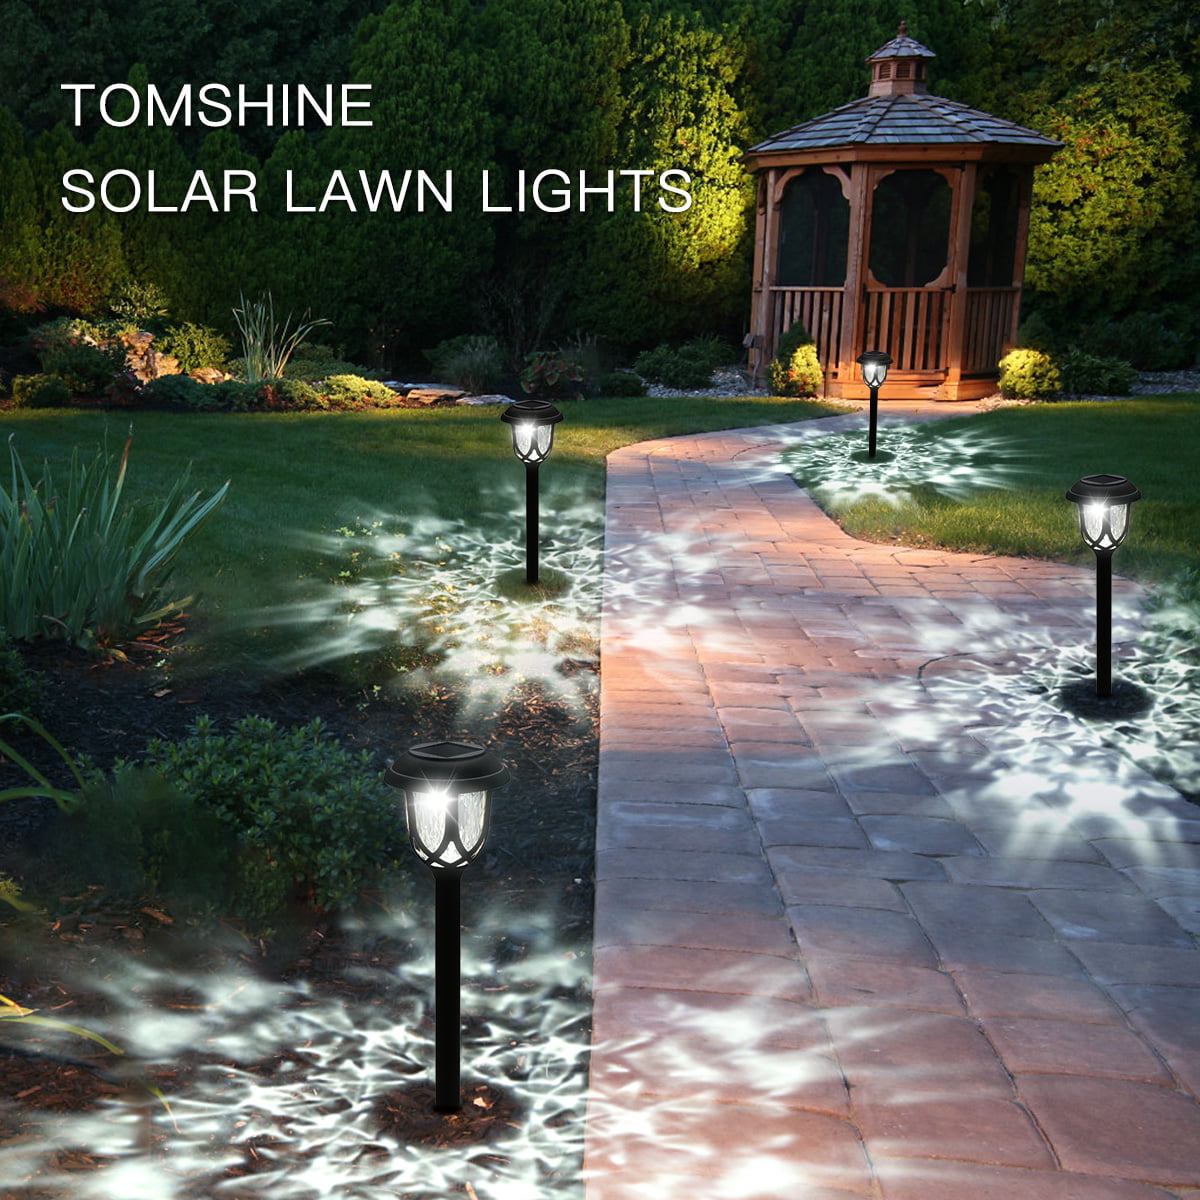 Details about   12X Tomshine Solar Power LED Lawn Light Decor Garden Yard Pathway Landscape Lamp 